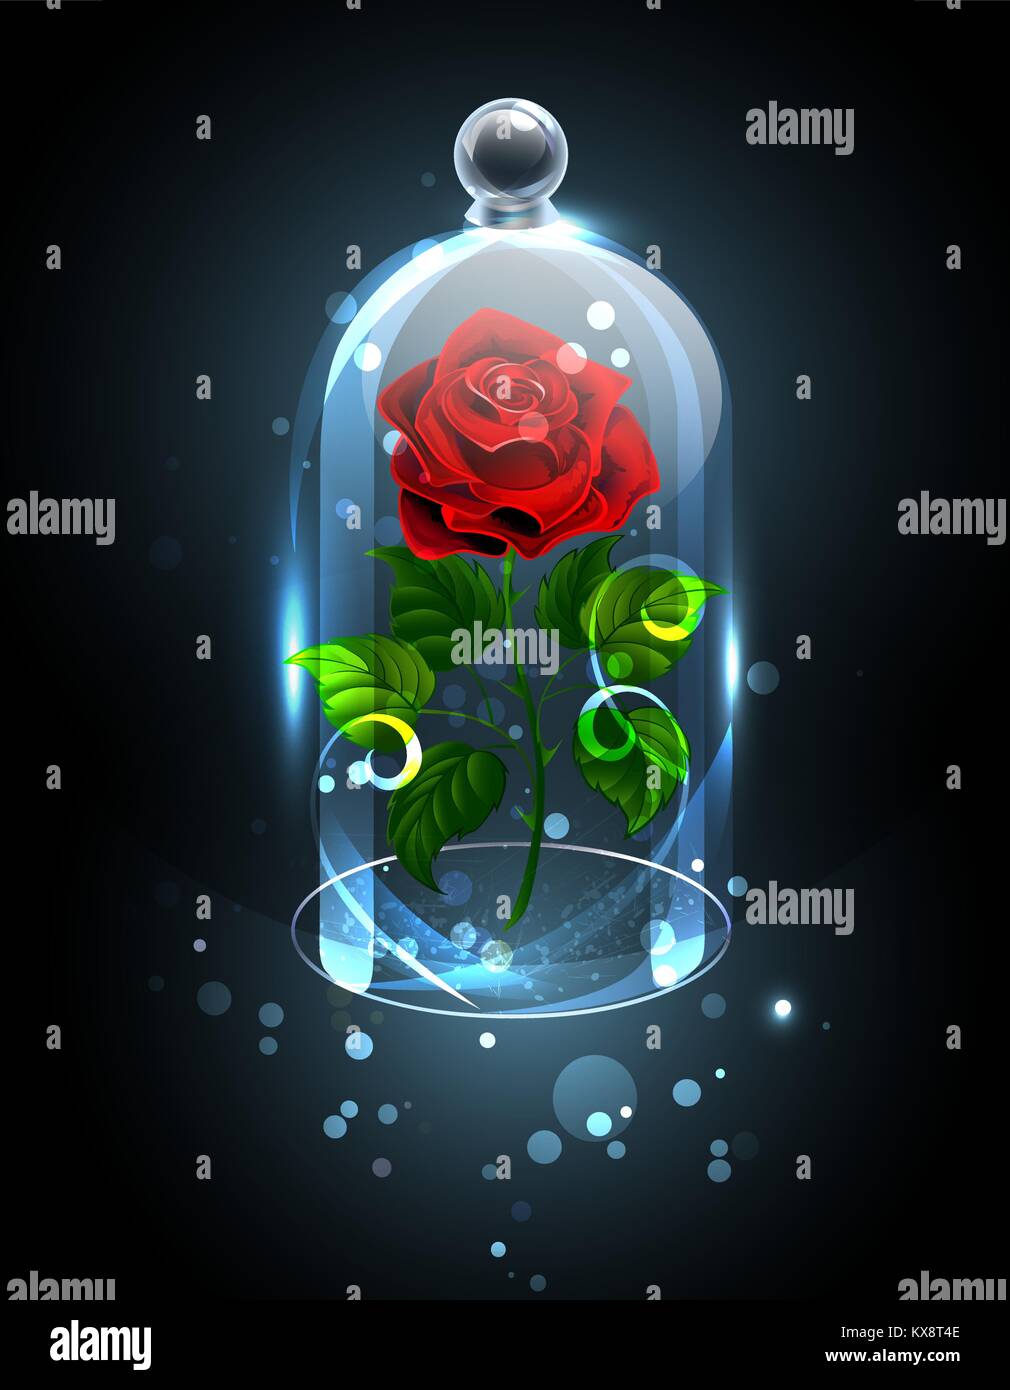 Rosso, Rosa eterna sotto una scintillante cupola in cristallo su uno sfondo scuro. Rosa rossa. Illustrazione Vettoriale. Illustrazione Vettoriale